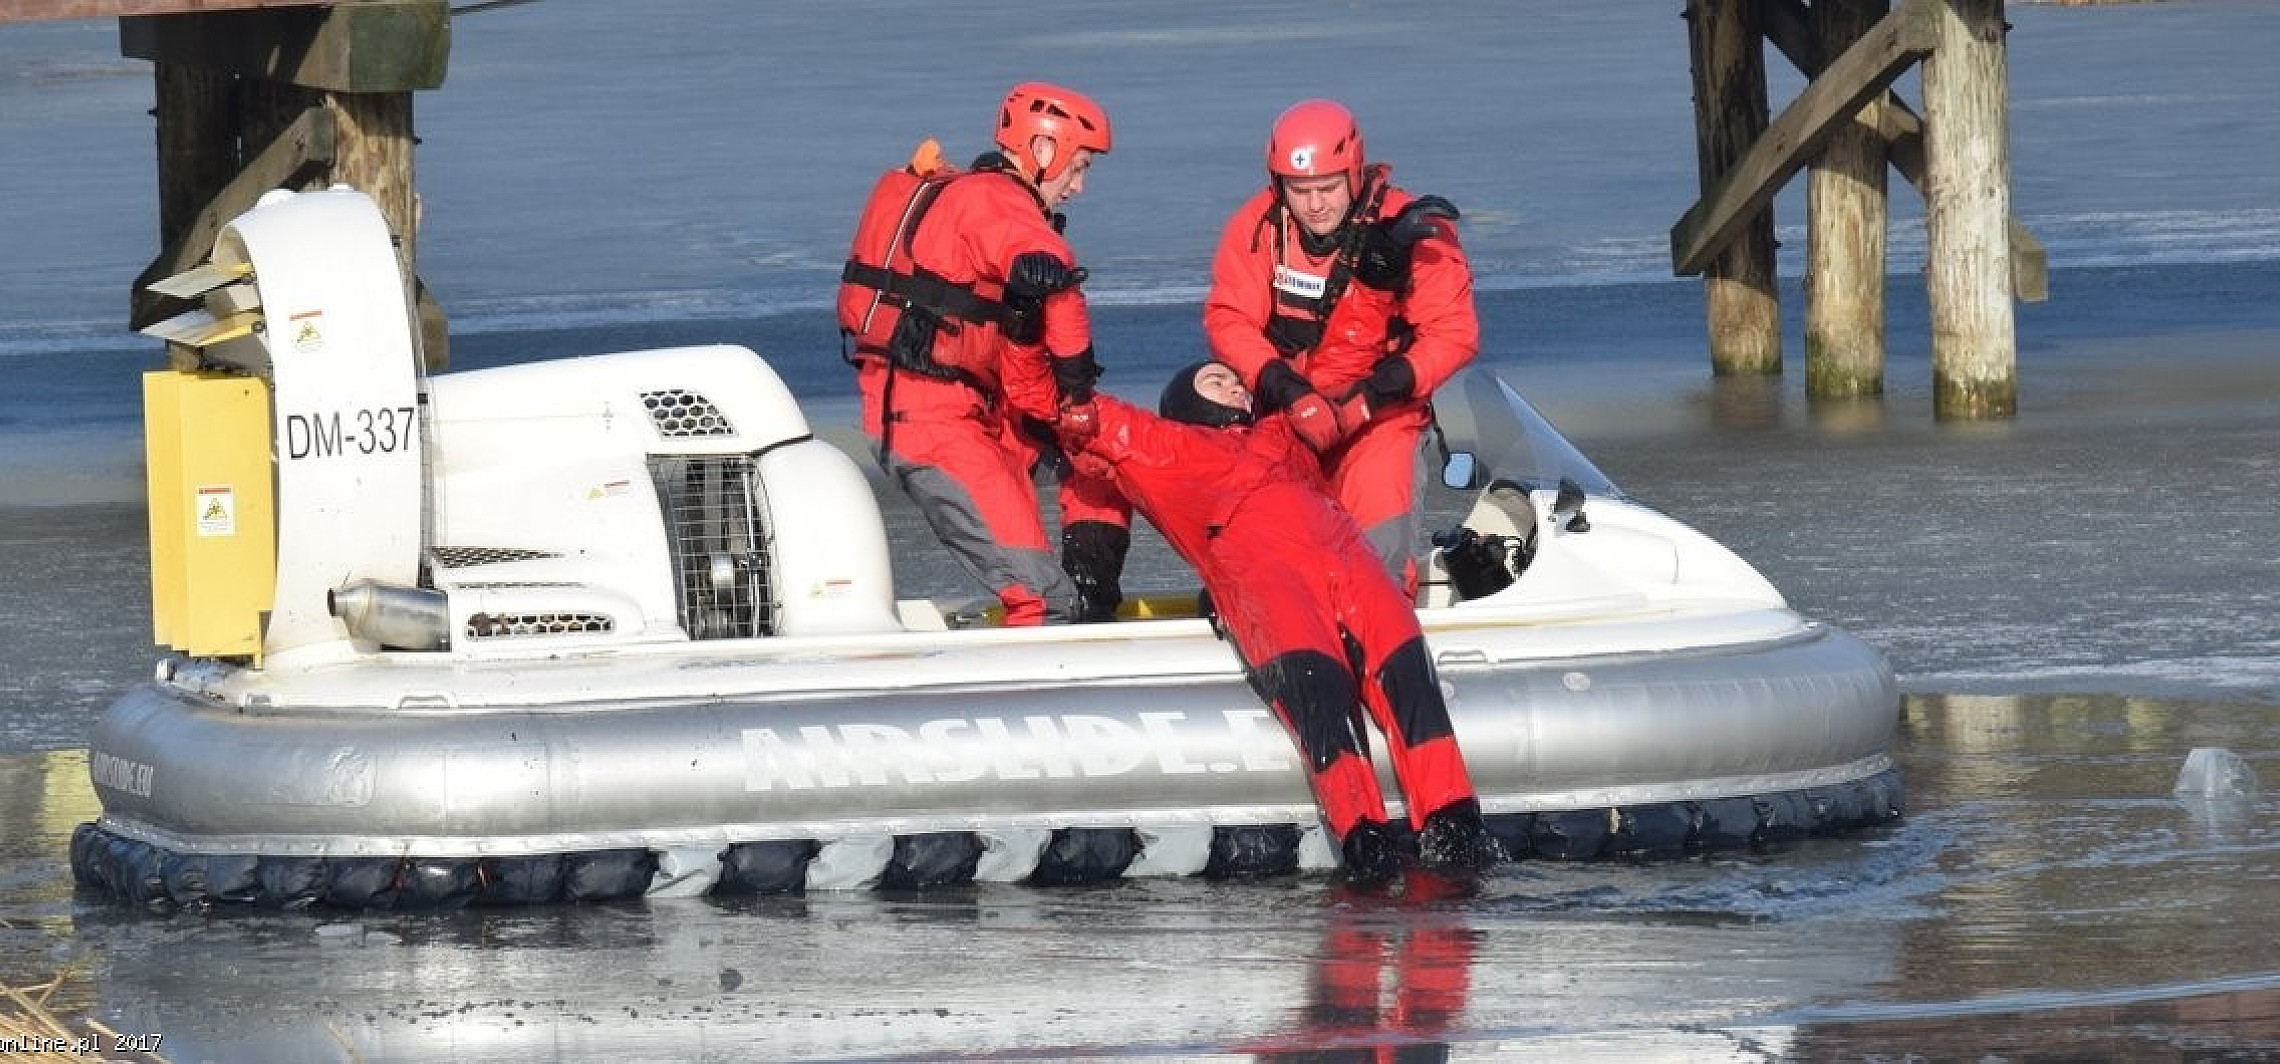 Inowrocław - Pokazy służb ratunkowych na lodzie w Solankach